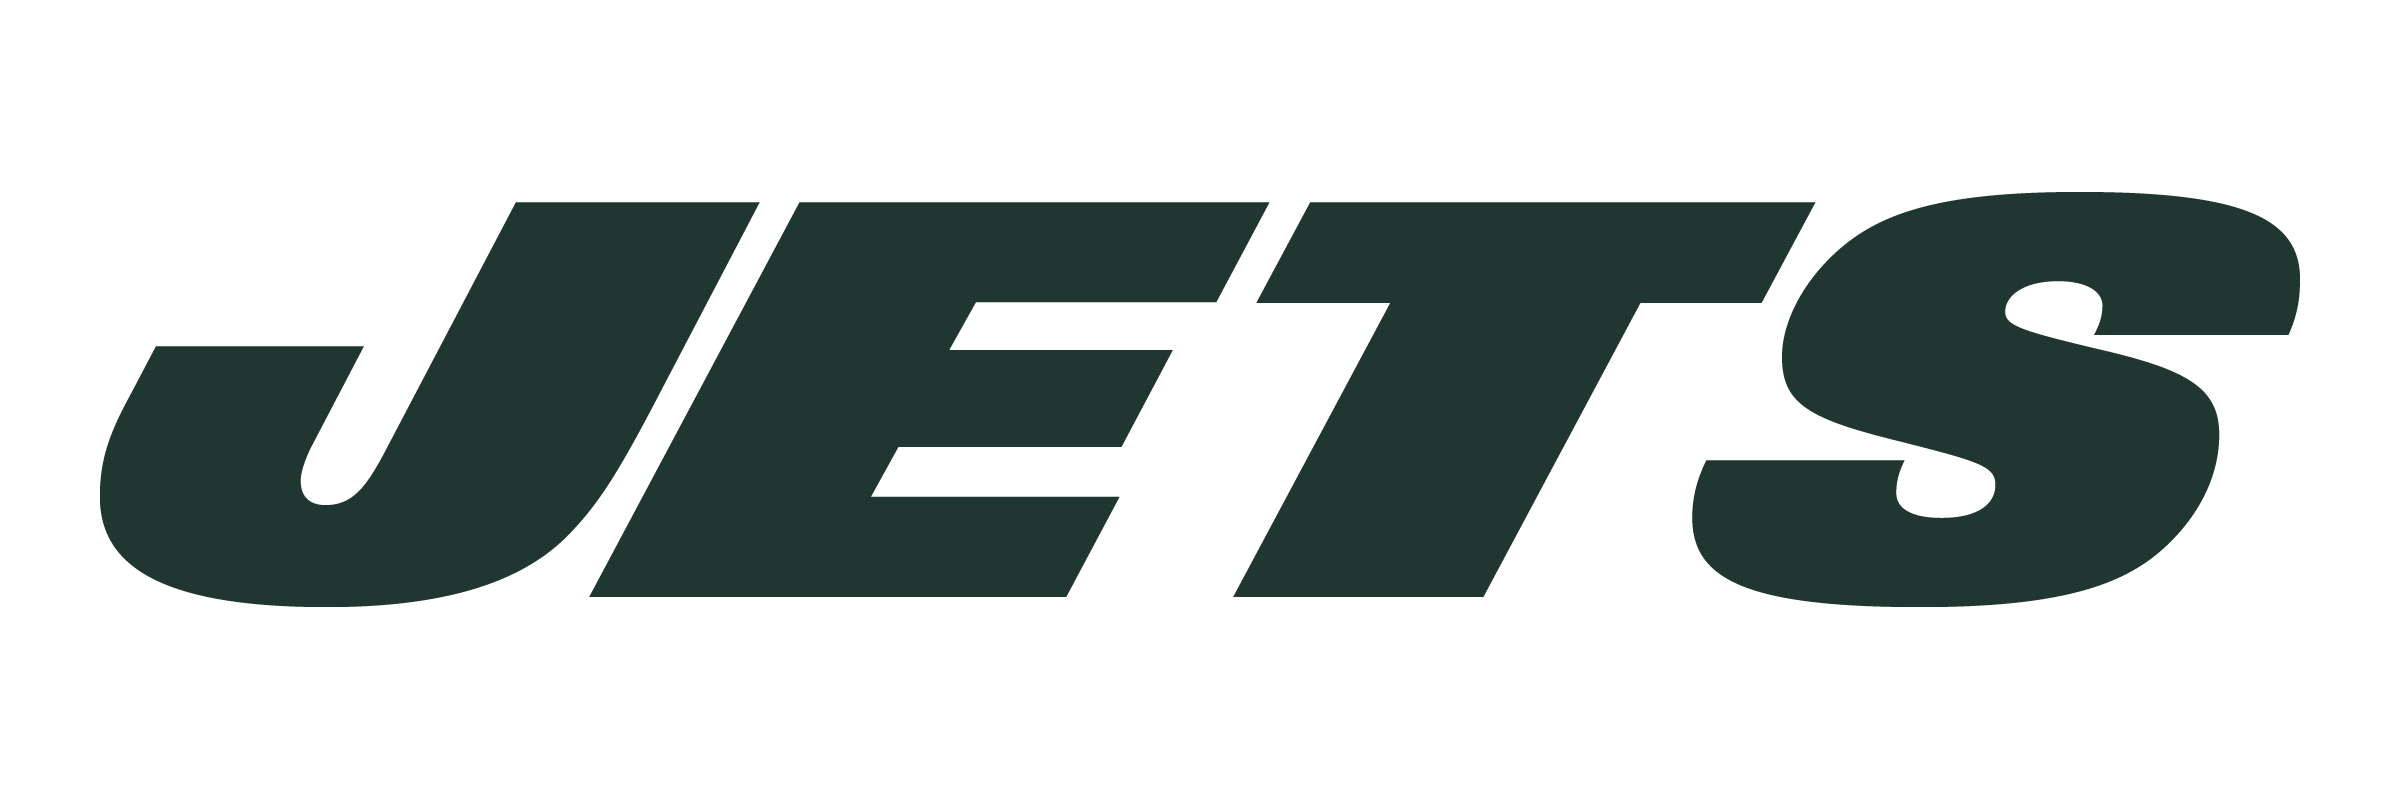 Jets Logo - New York Jets Logo PNG Transparent & SVG Vector - Freebie Supply